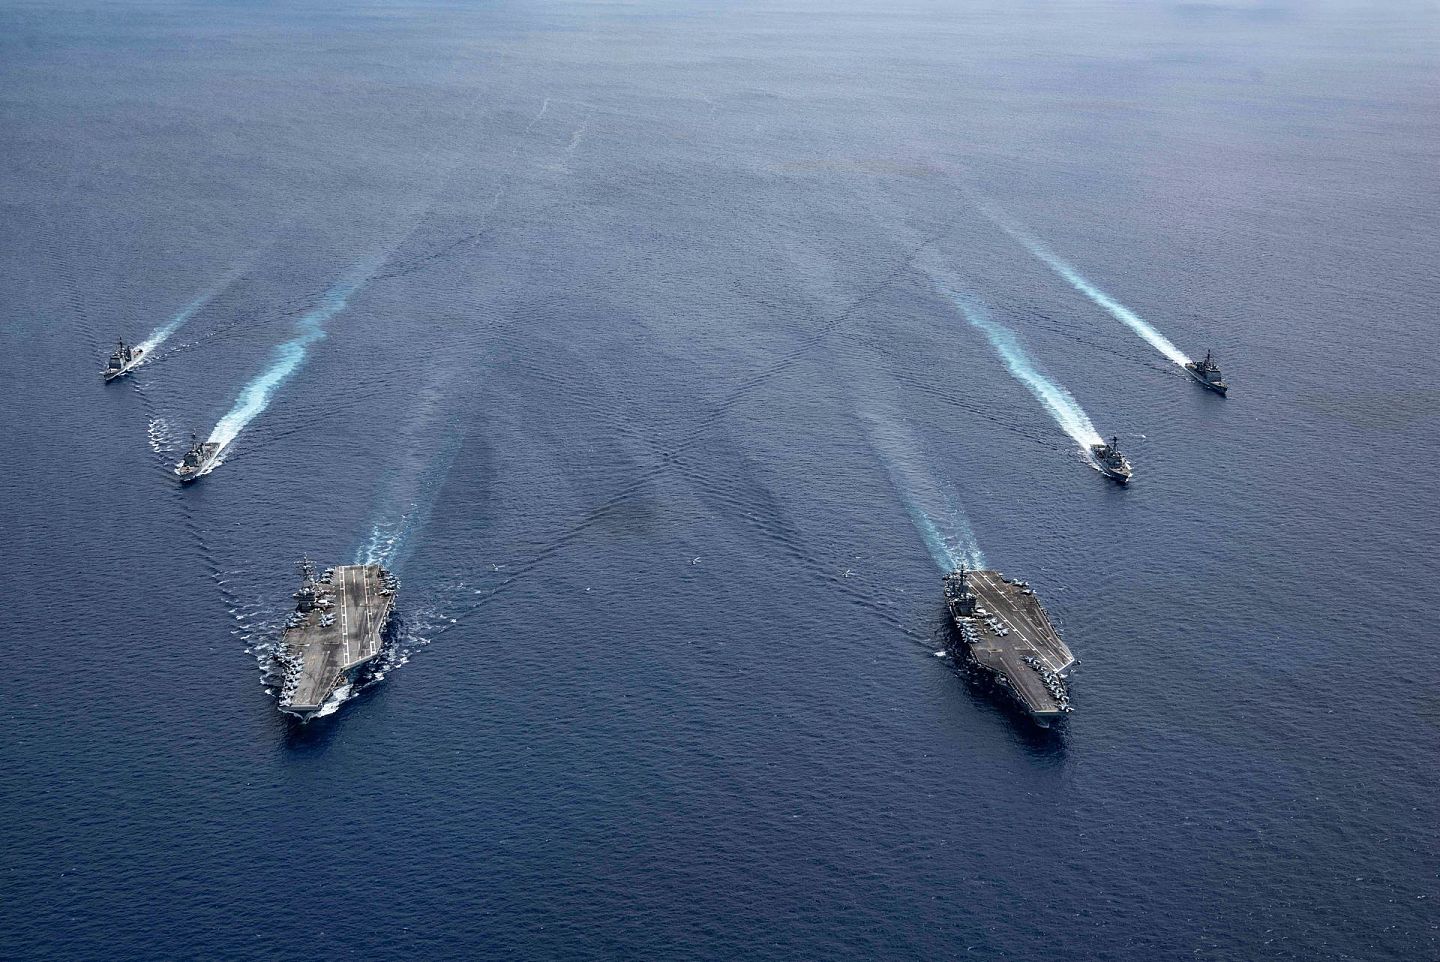 虽然美国海军受到了疫情的影响，但美国还是派出军事力量前往南海展示存在感。图为2020年7月6日，美国海军罗纳德·里根号(CVN 76)和尼米兹号(CVN 68)航母战斗群在南海。（AP)